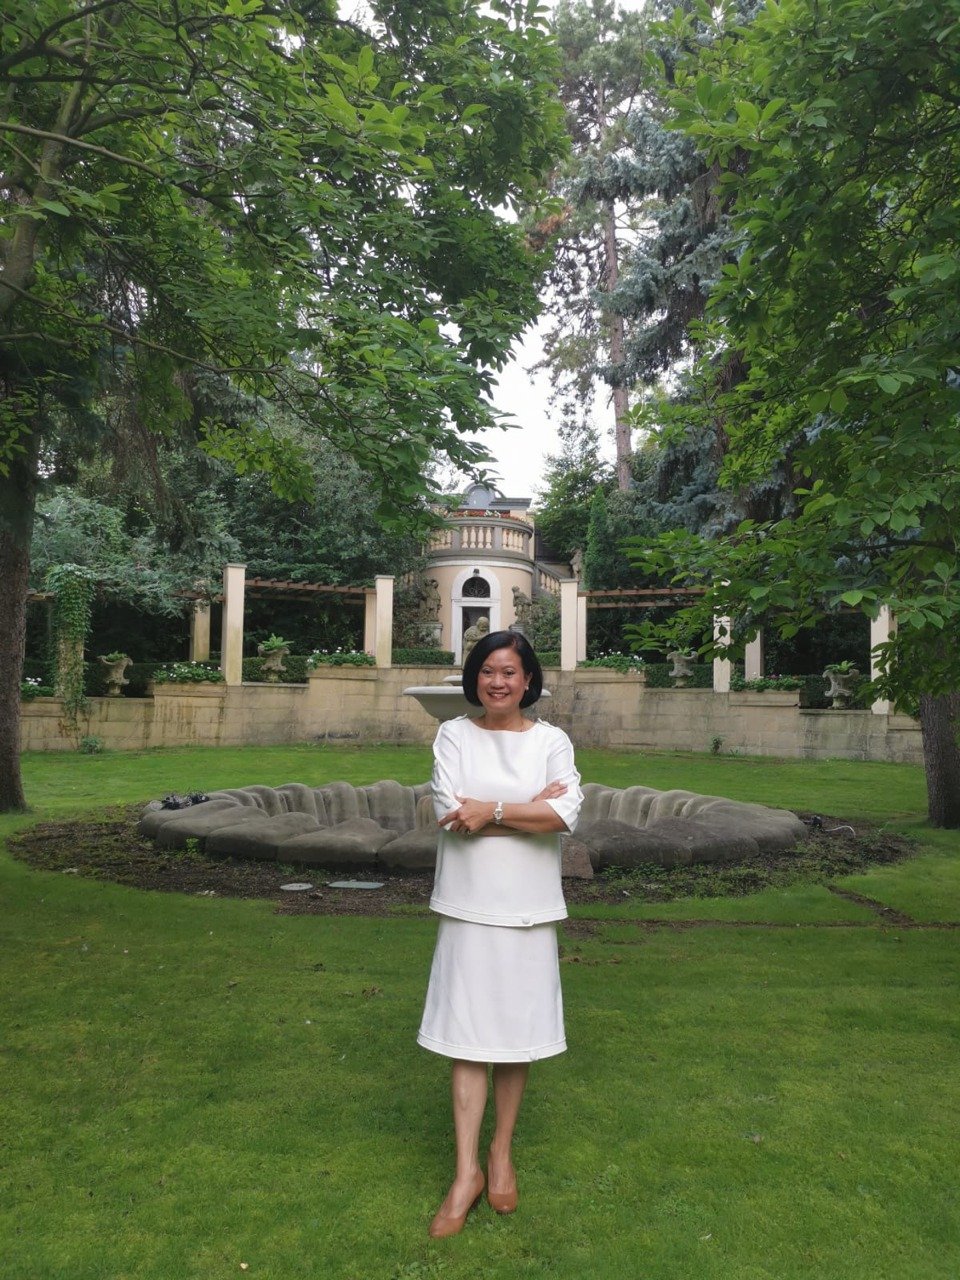 Dominantou zahrady rezidence thajských velvyslanců je monumentální kašna, kolem které je veden stupňovitý ochoz. Malebná zahrada dobře střeží soukromí Ureerat Chareontohové, která v Praze působí osmým měsícem coby velvyslankyně.